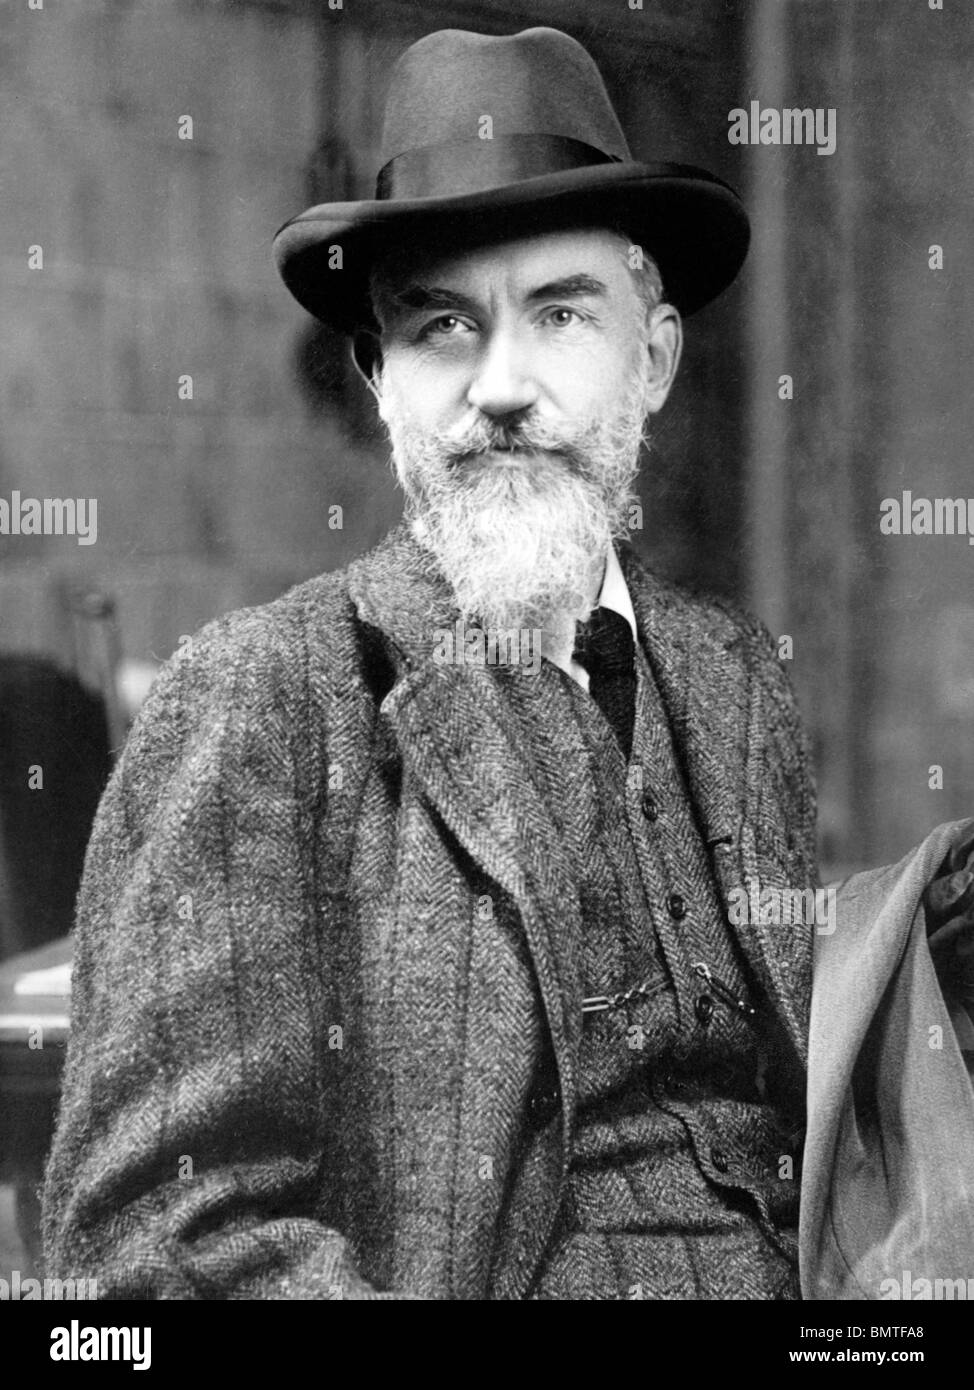 Foto ritratto c1909 del drammaturgo irlandese George Bernard Shaw (1856 - 1950) - Il vincitore del Premio Nobel per la letteratura nel 1925. Foto Stock